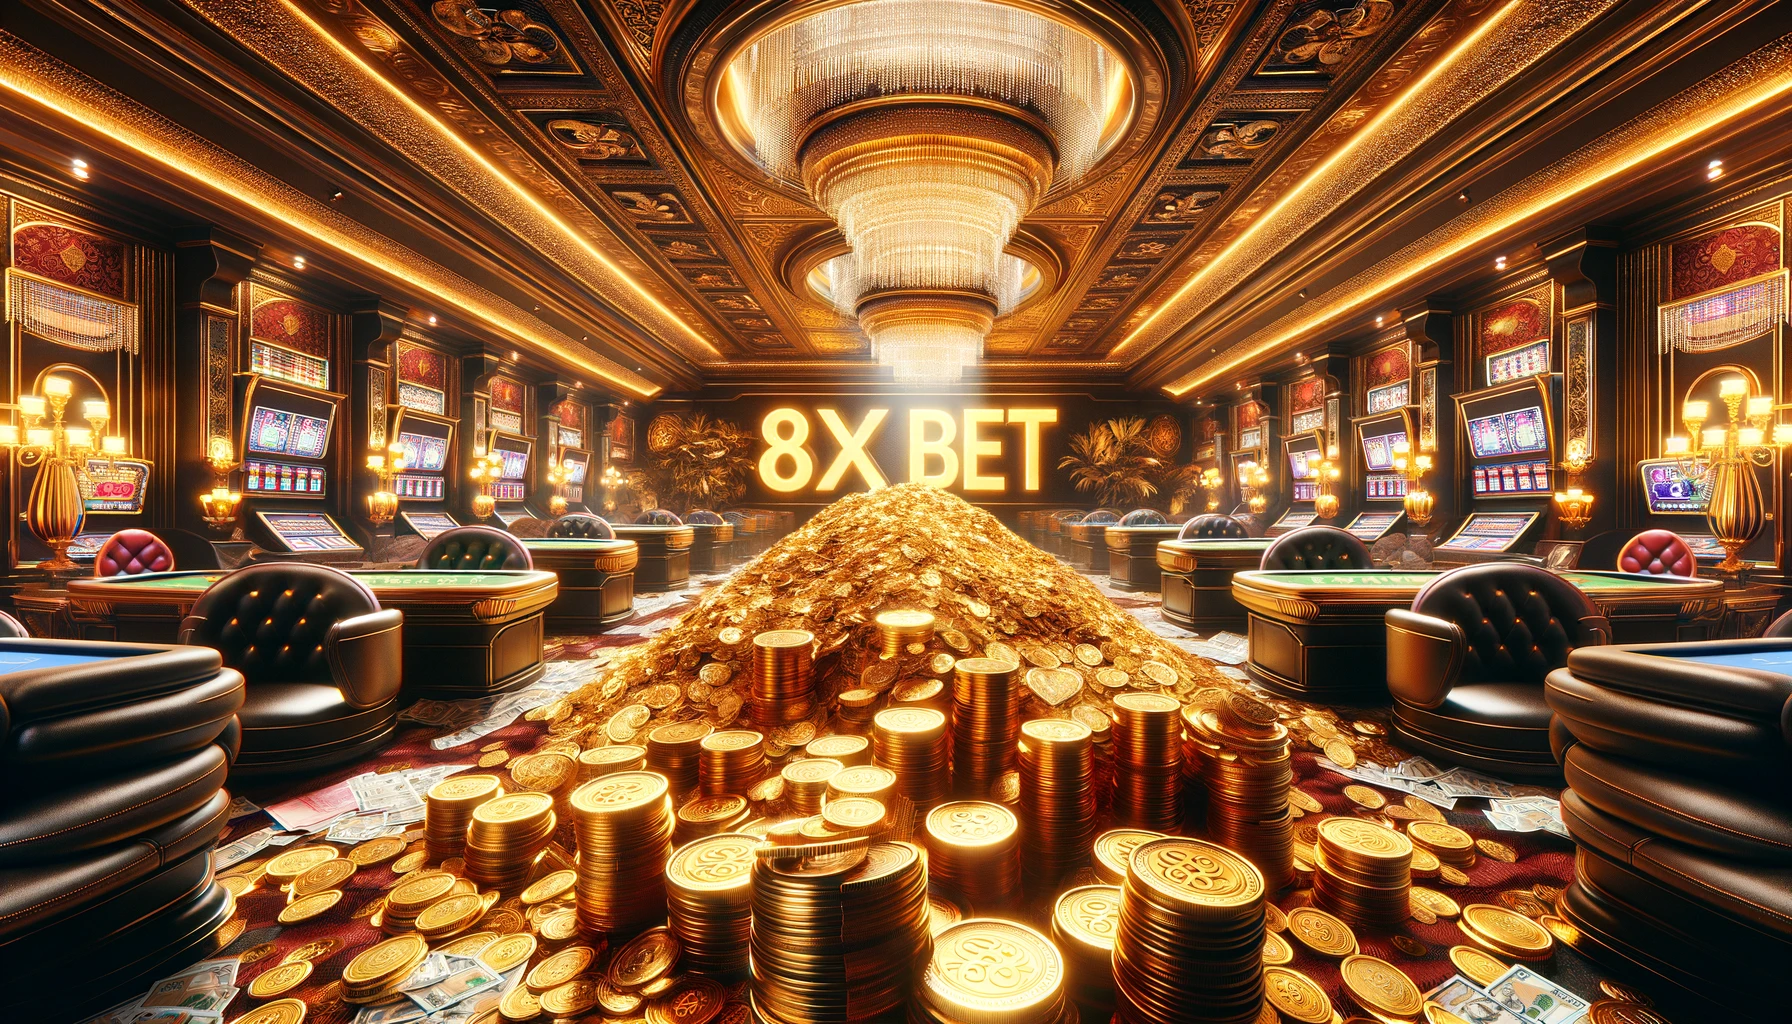 8xbet casino - nơi người chơi tìm kiếm giá trị đích thực